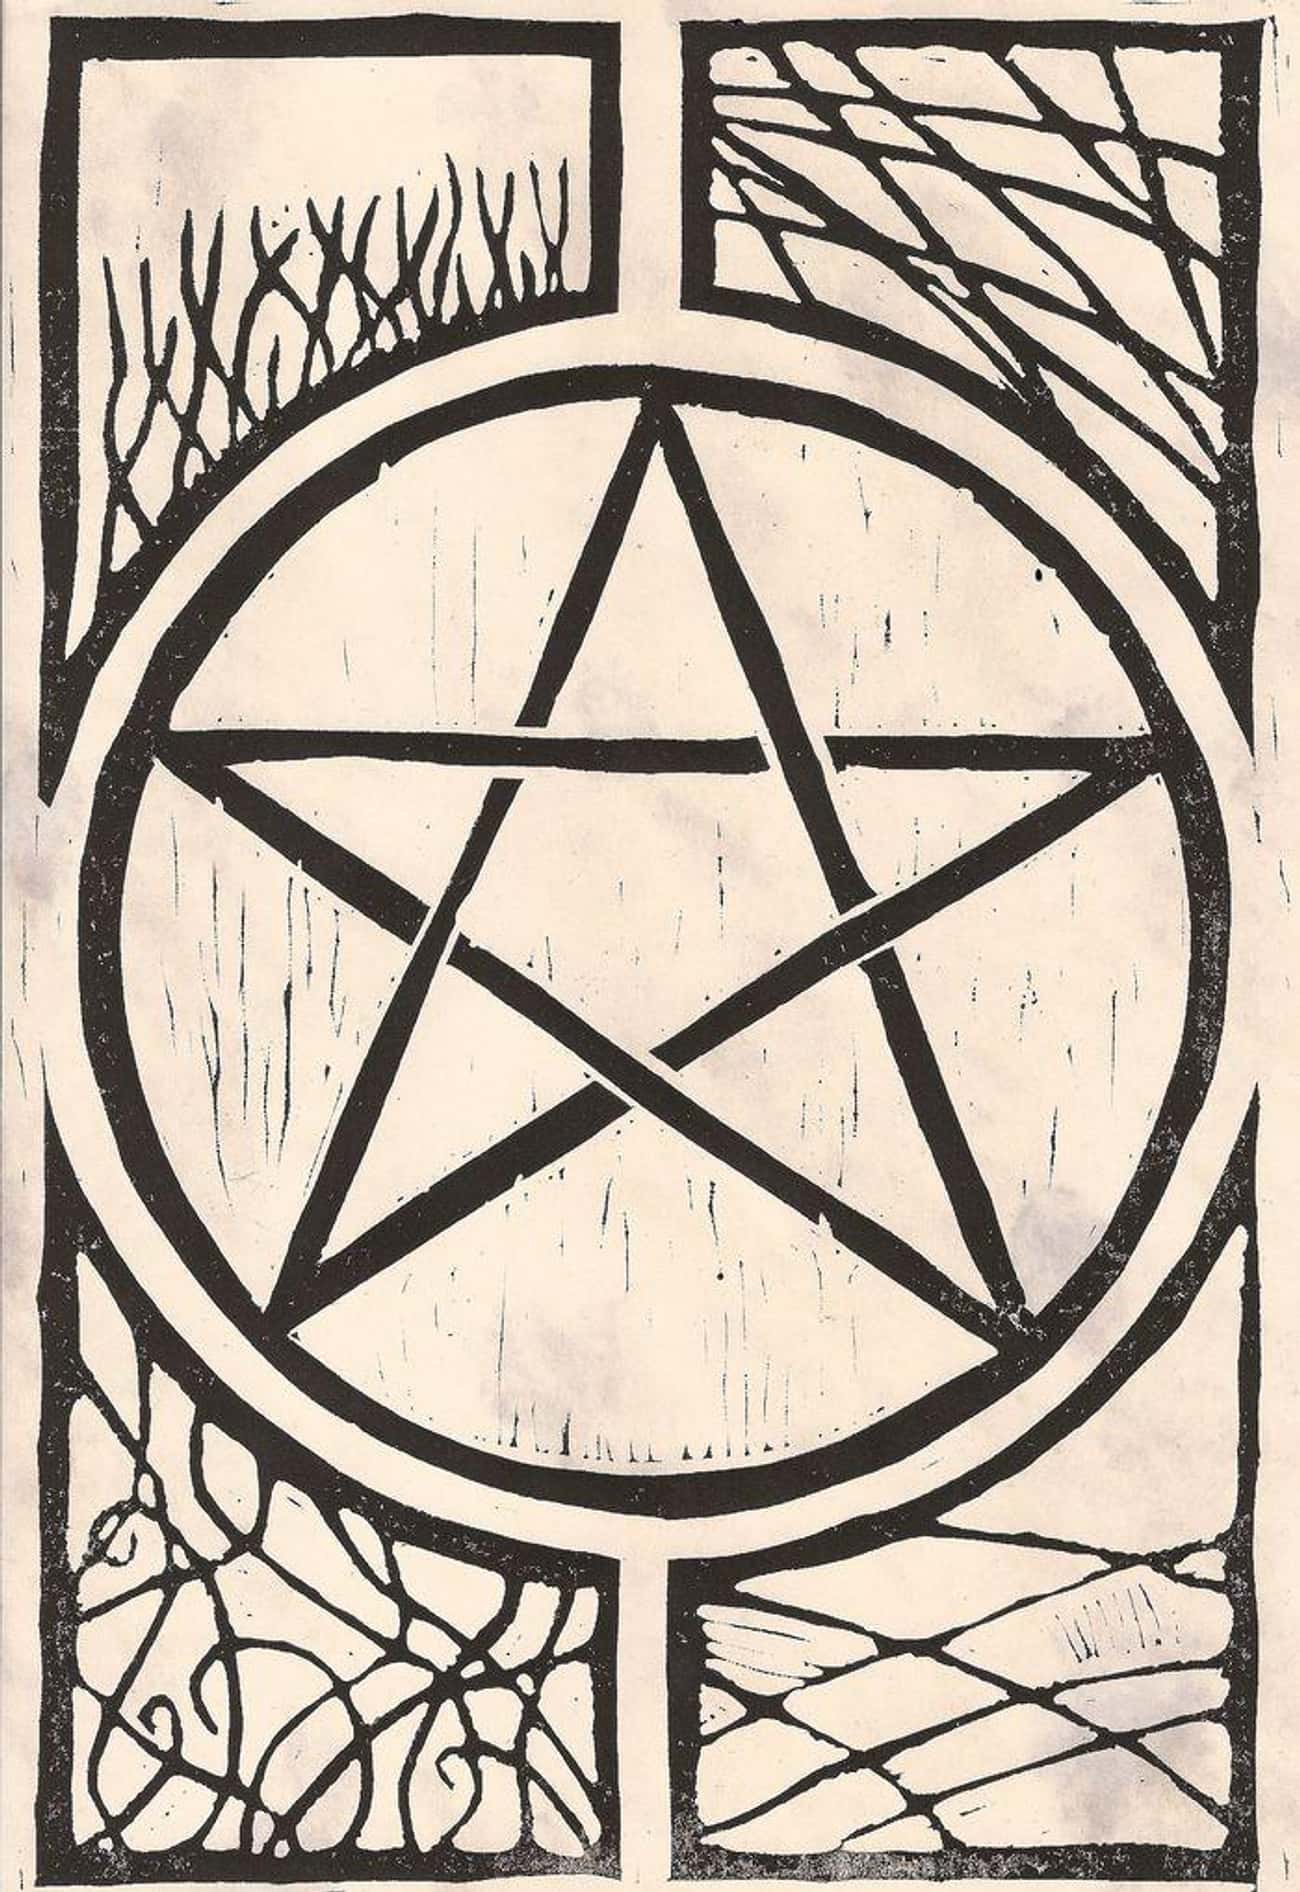 Is The Pentagram Good Or Bad?